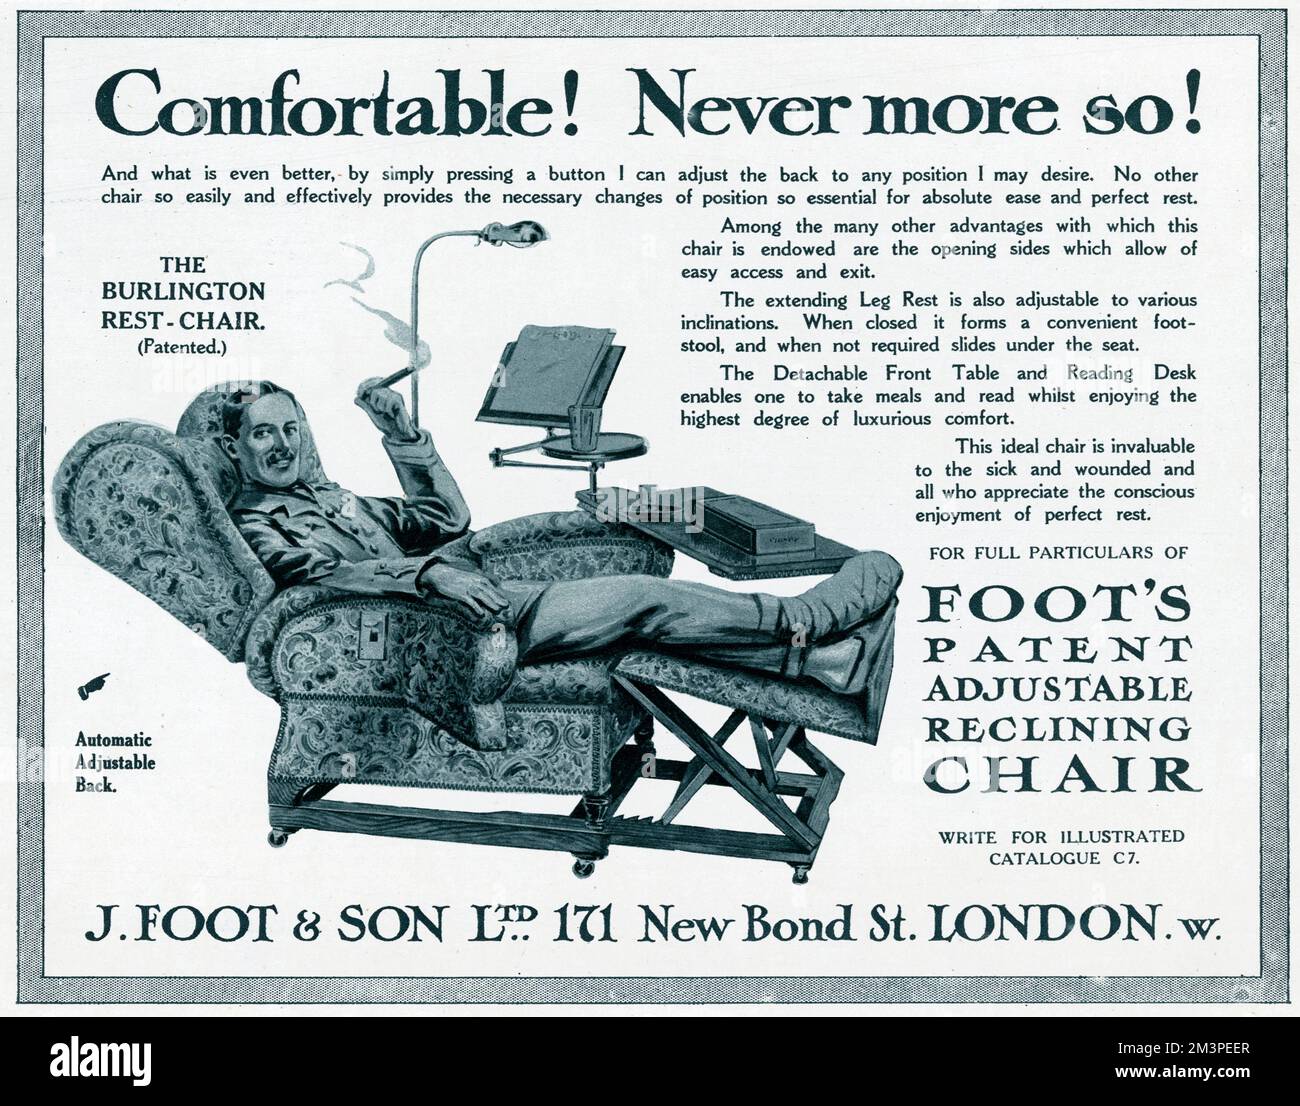 WW1 - Una pubblicità di prodotto che promuove 'la Burlington Rest-Chair', una sedia reclinabile regolabile. Il prodotto è pubblicizzato come la sedia ideale per i malati e feriti. Dopo il ritorno dalla guerra, questa era presumibilmente la sedia ideale per recuperare salute e stabilità, in 'perfetto' riposo e comfort. Foto Stock